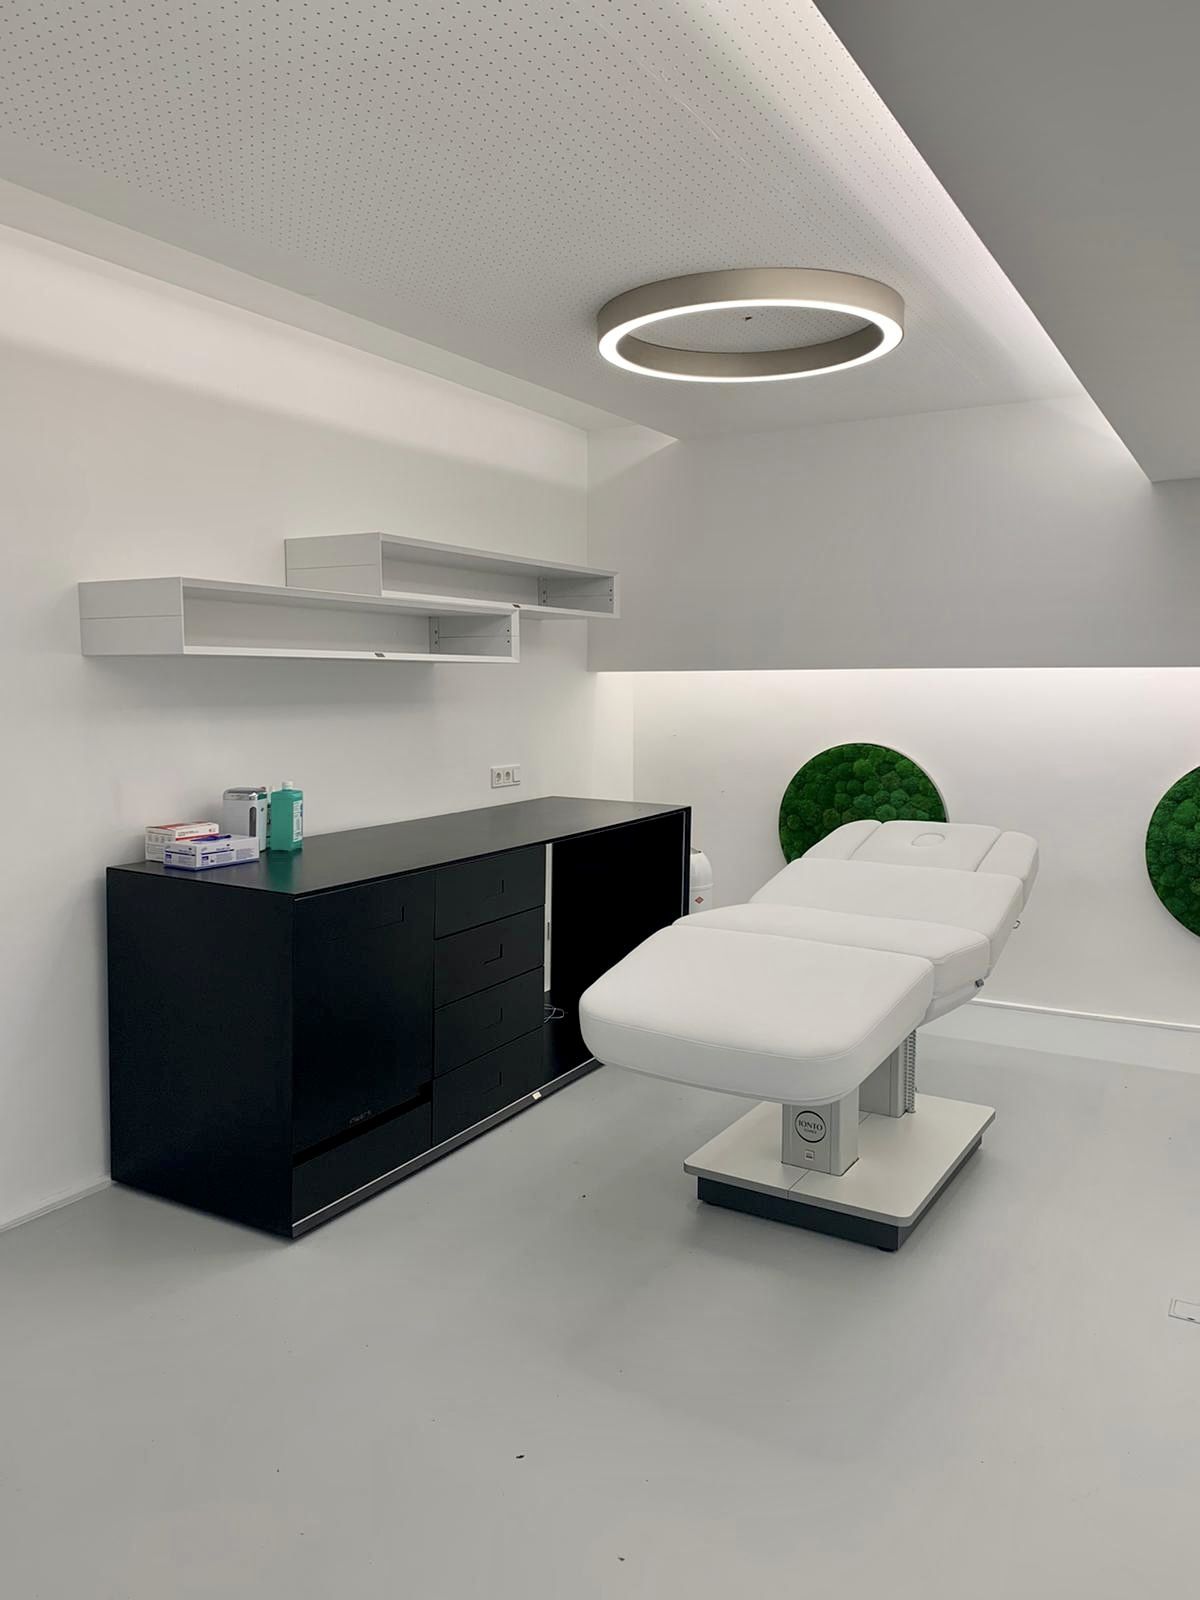 Das Beratungszimmer ist im gleichen Stil gestaltet. Der weiße Patientenstuhl steht neben den Regalen und Schränken, die Materialien für die Behandlung verstauen. An der Wand sind runde Kunststoffrasen dekorativ befestigt.